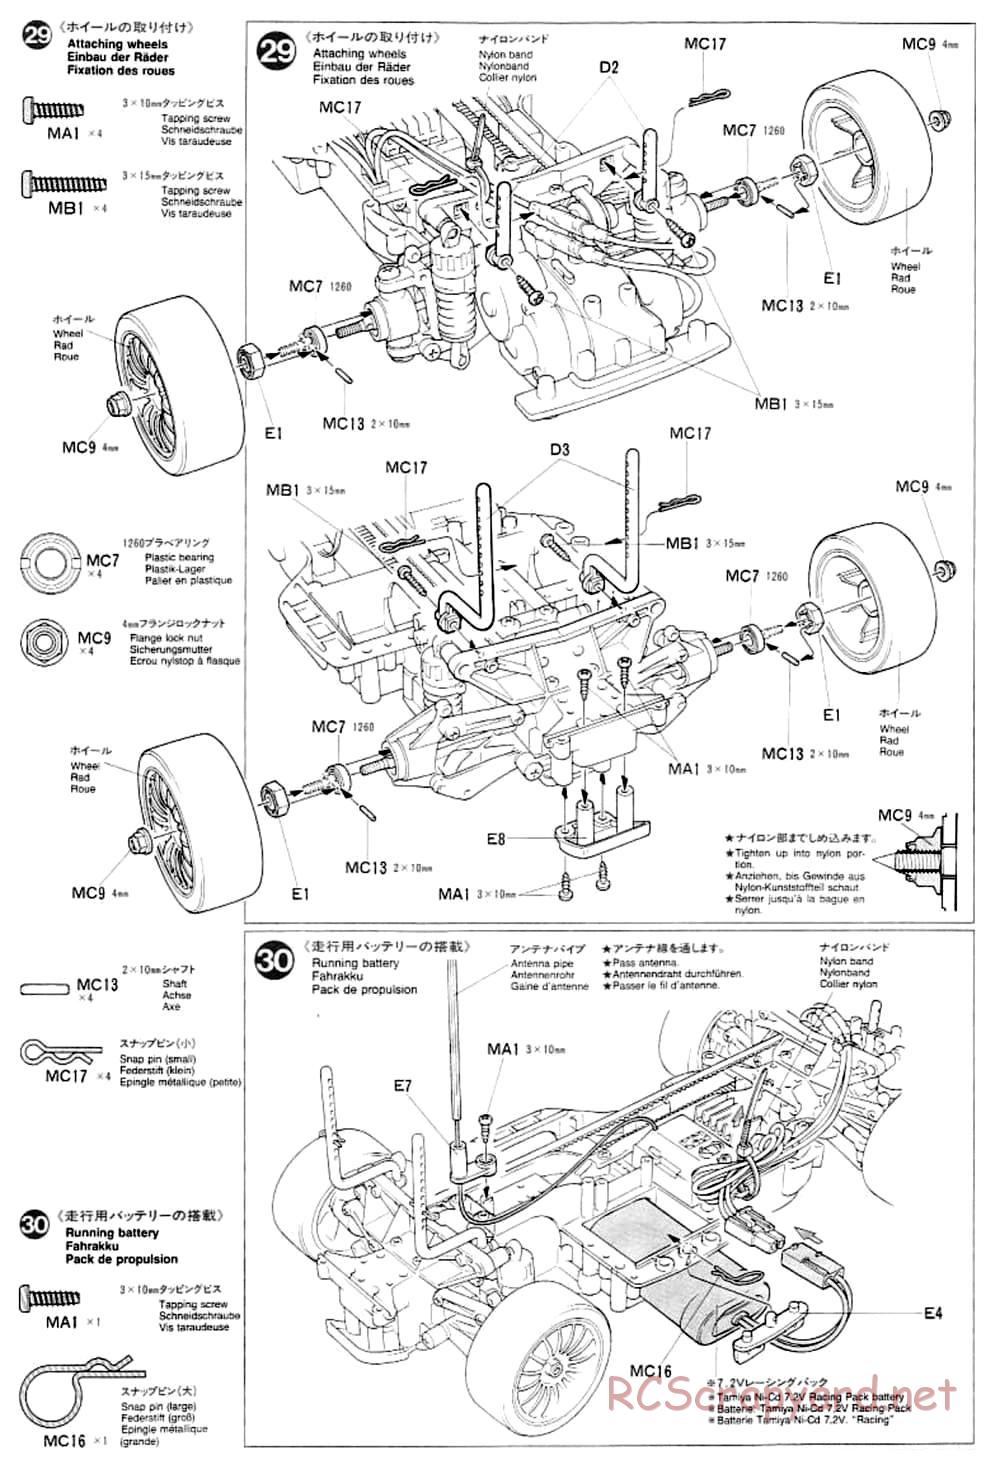 Tamiya - TA-03F Chassis - Manual - Page 16